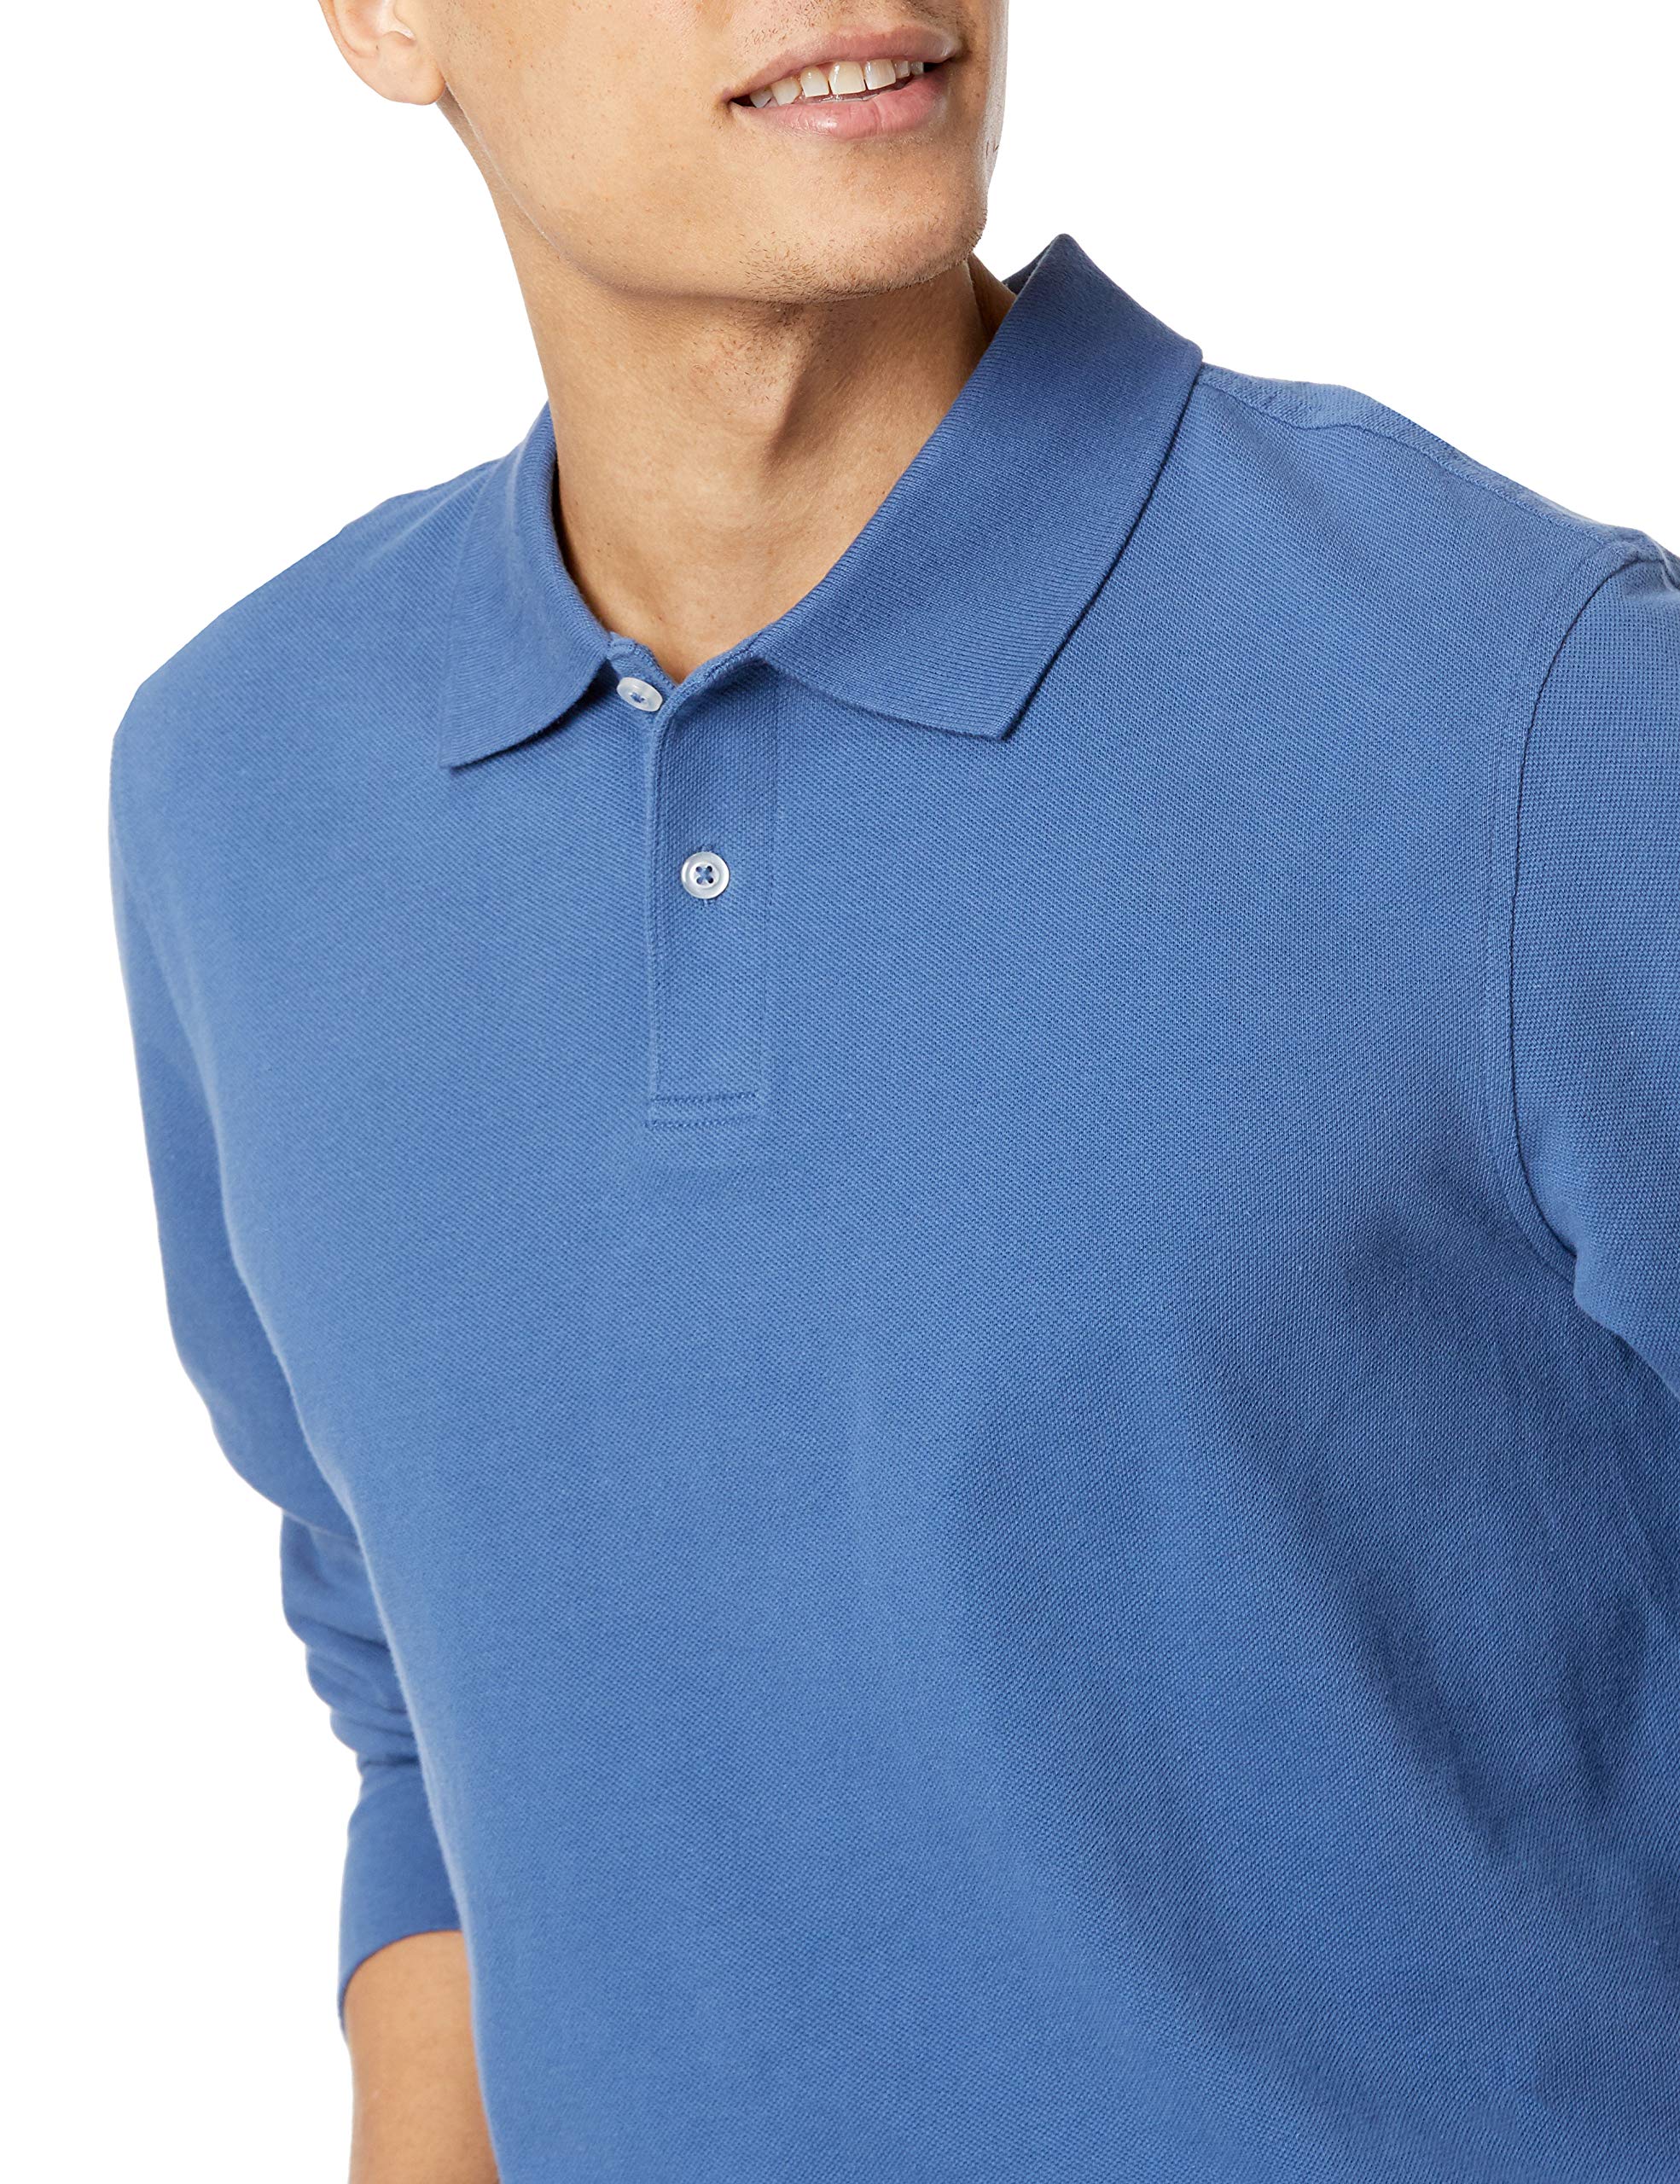 Amazon Essentials Men's Slim-Fit Long-Sleeve Pique Polo, Blue, Large